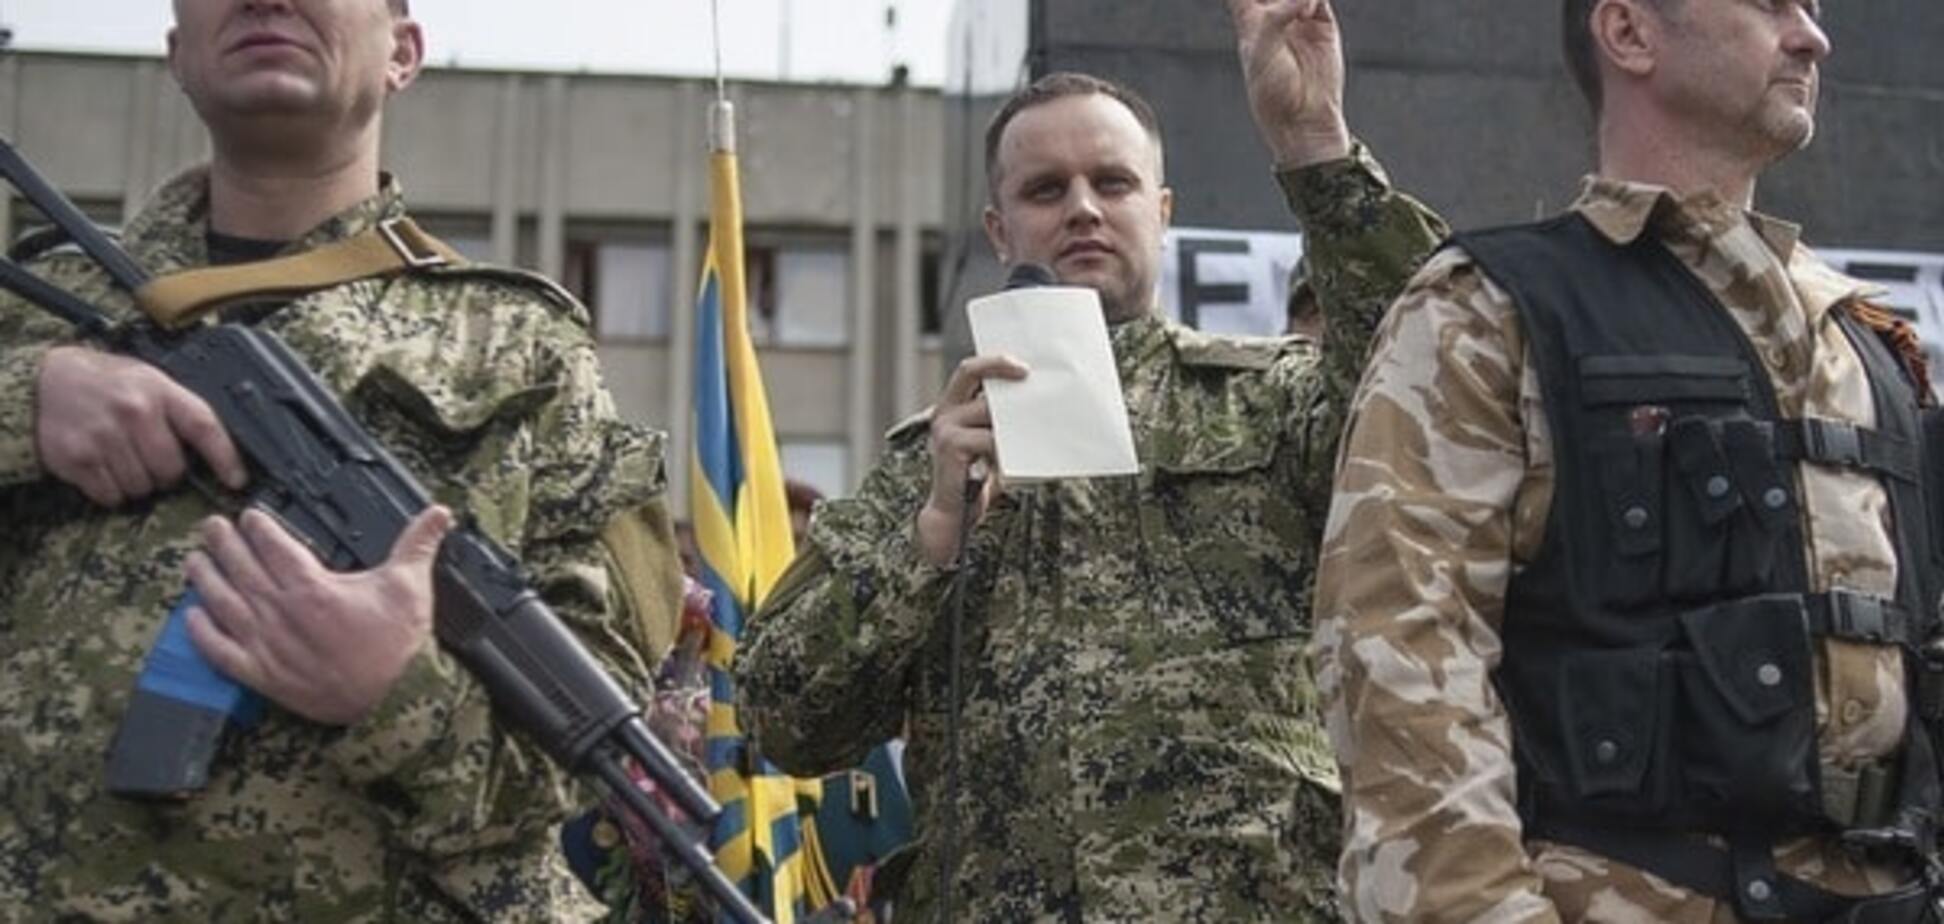 Игры престолов: главарь 'ДНР' назначил террориста Губарева 'и.о. мэра' Ясиноватой. Фотофакт